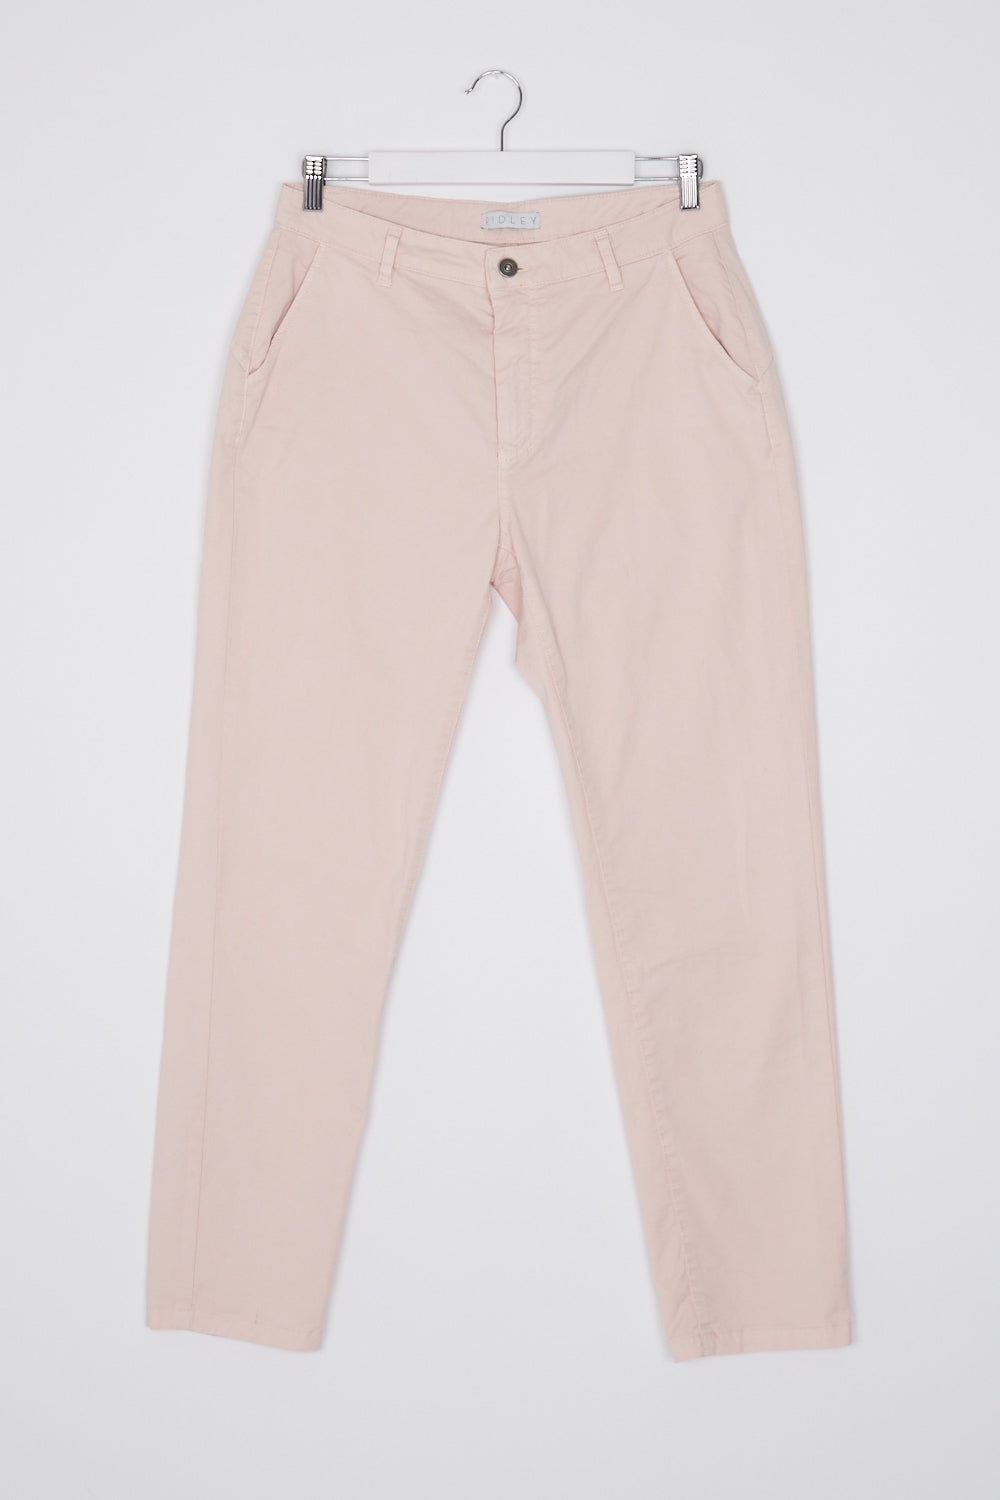 Ridley Pink Pants L